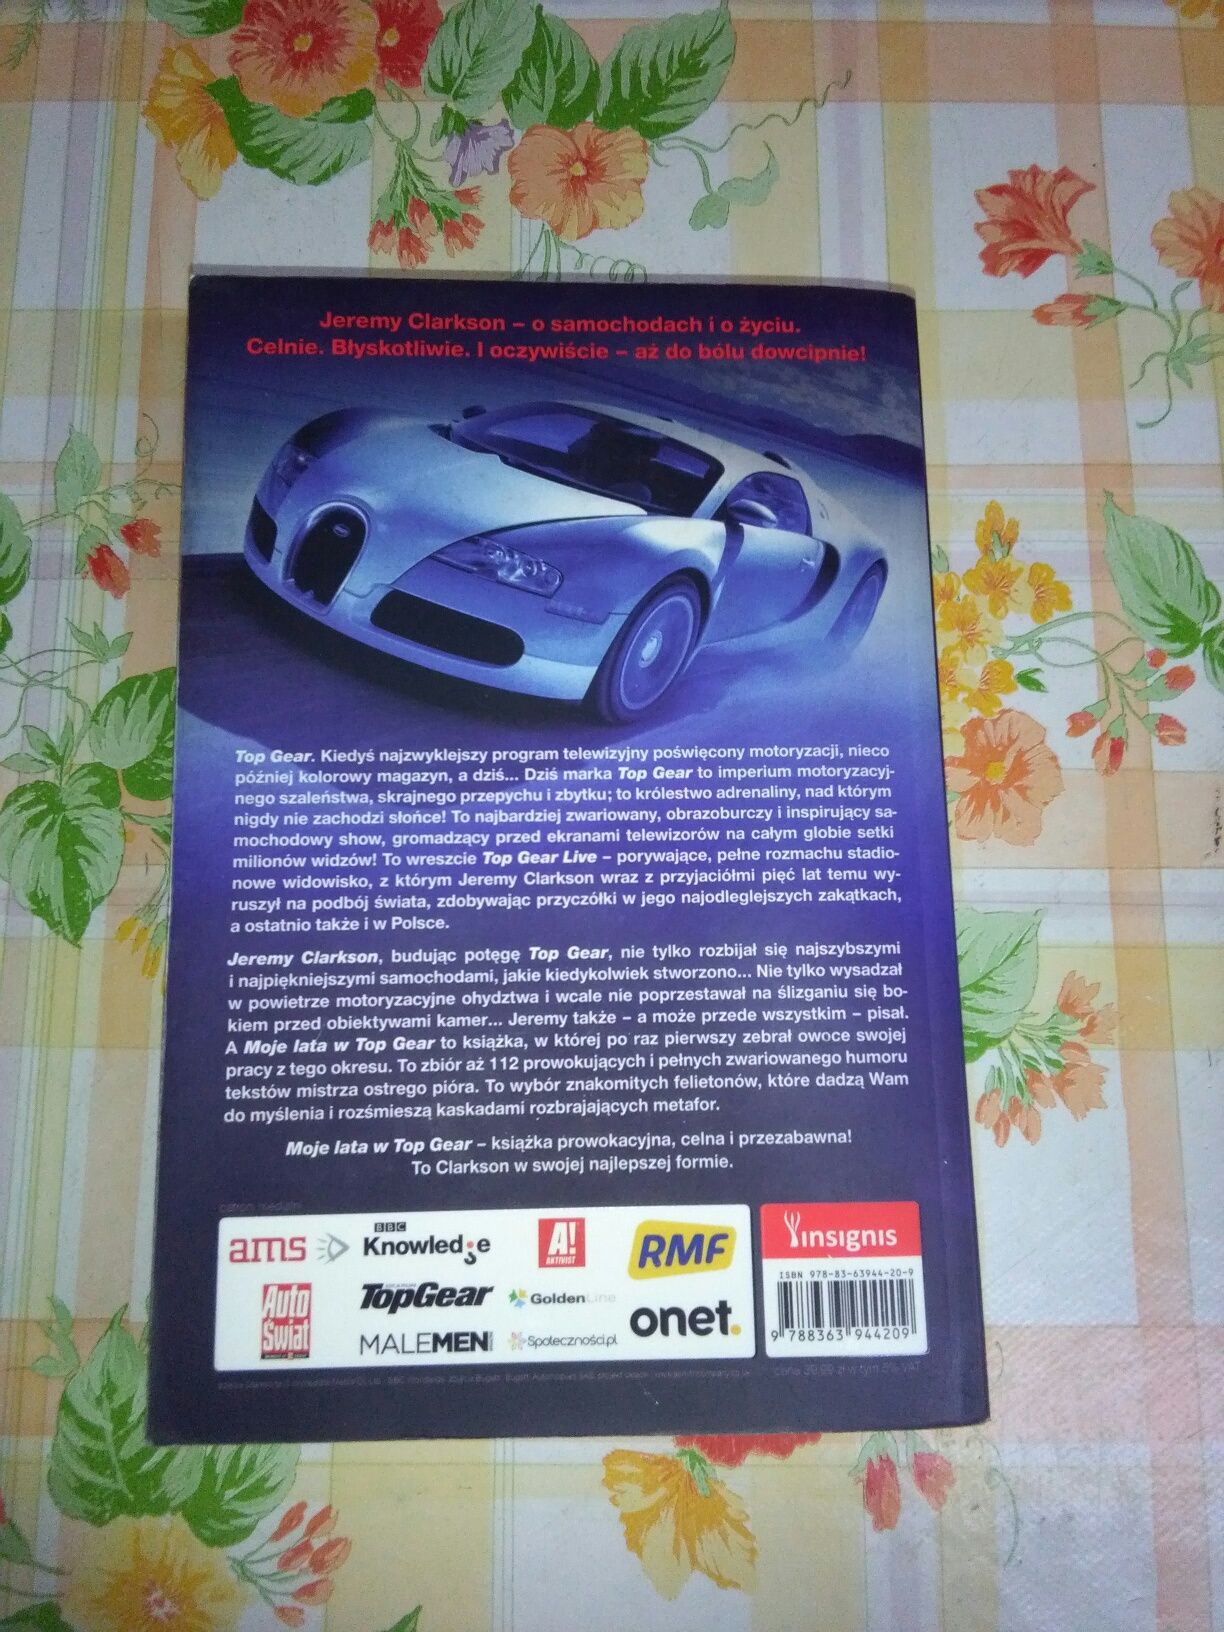 Książka Clarkson "Moje lata w Top Gear"